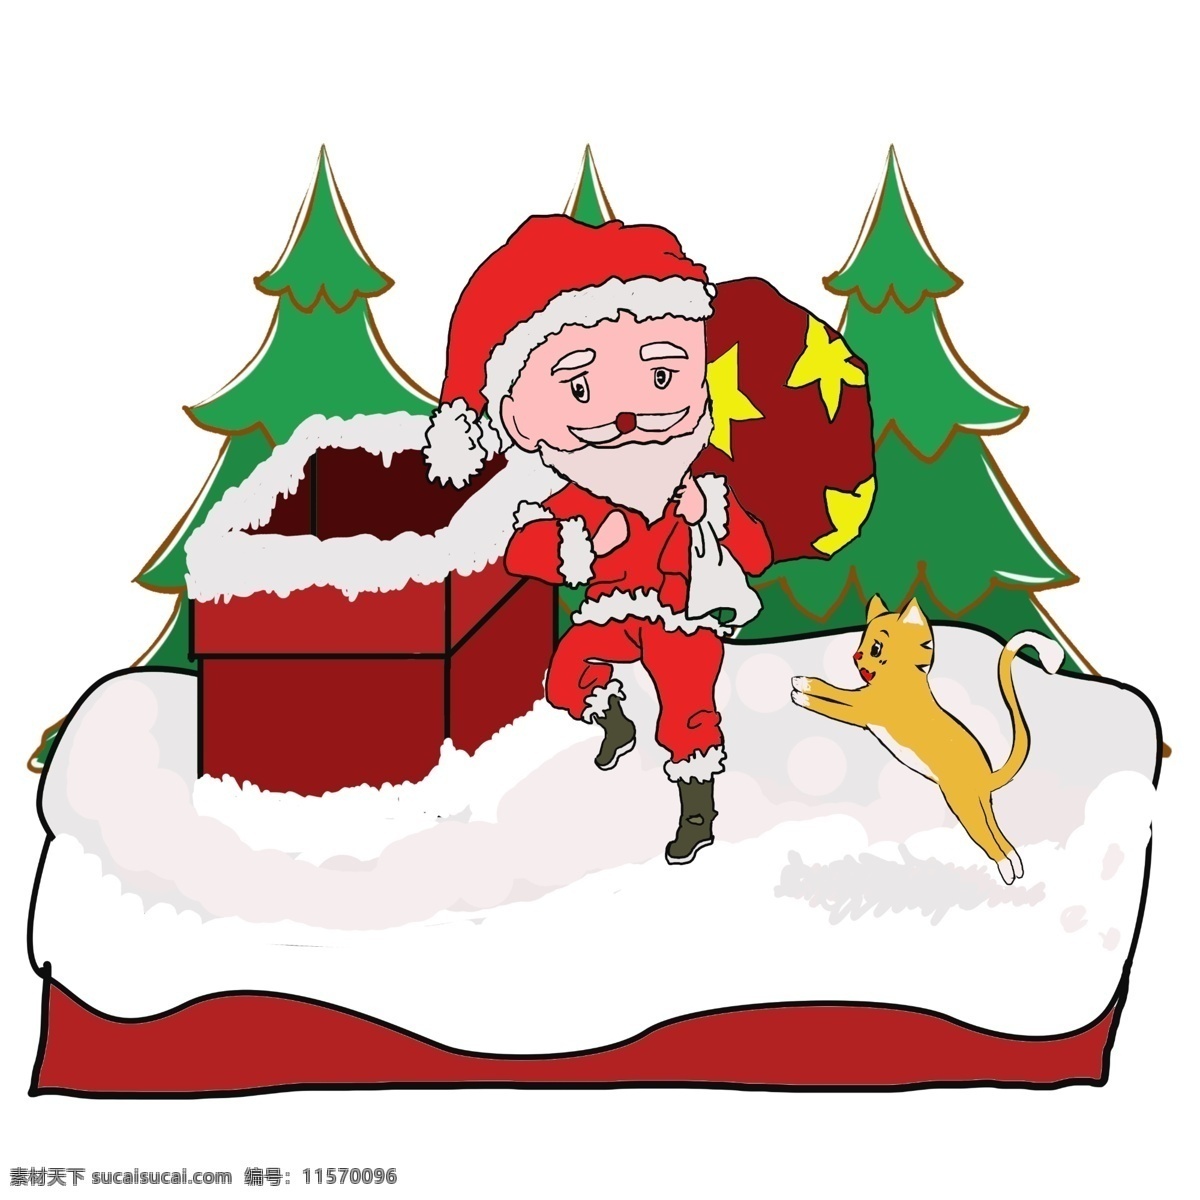 圣诞老人 猫 卡通画 圣诞节 圣诞树 冬天 圣诞 礼物 圣诞帽 下雪 冬季 小猫 惊喜 受欢迎的